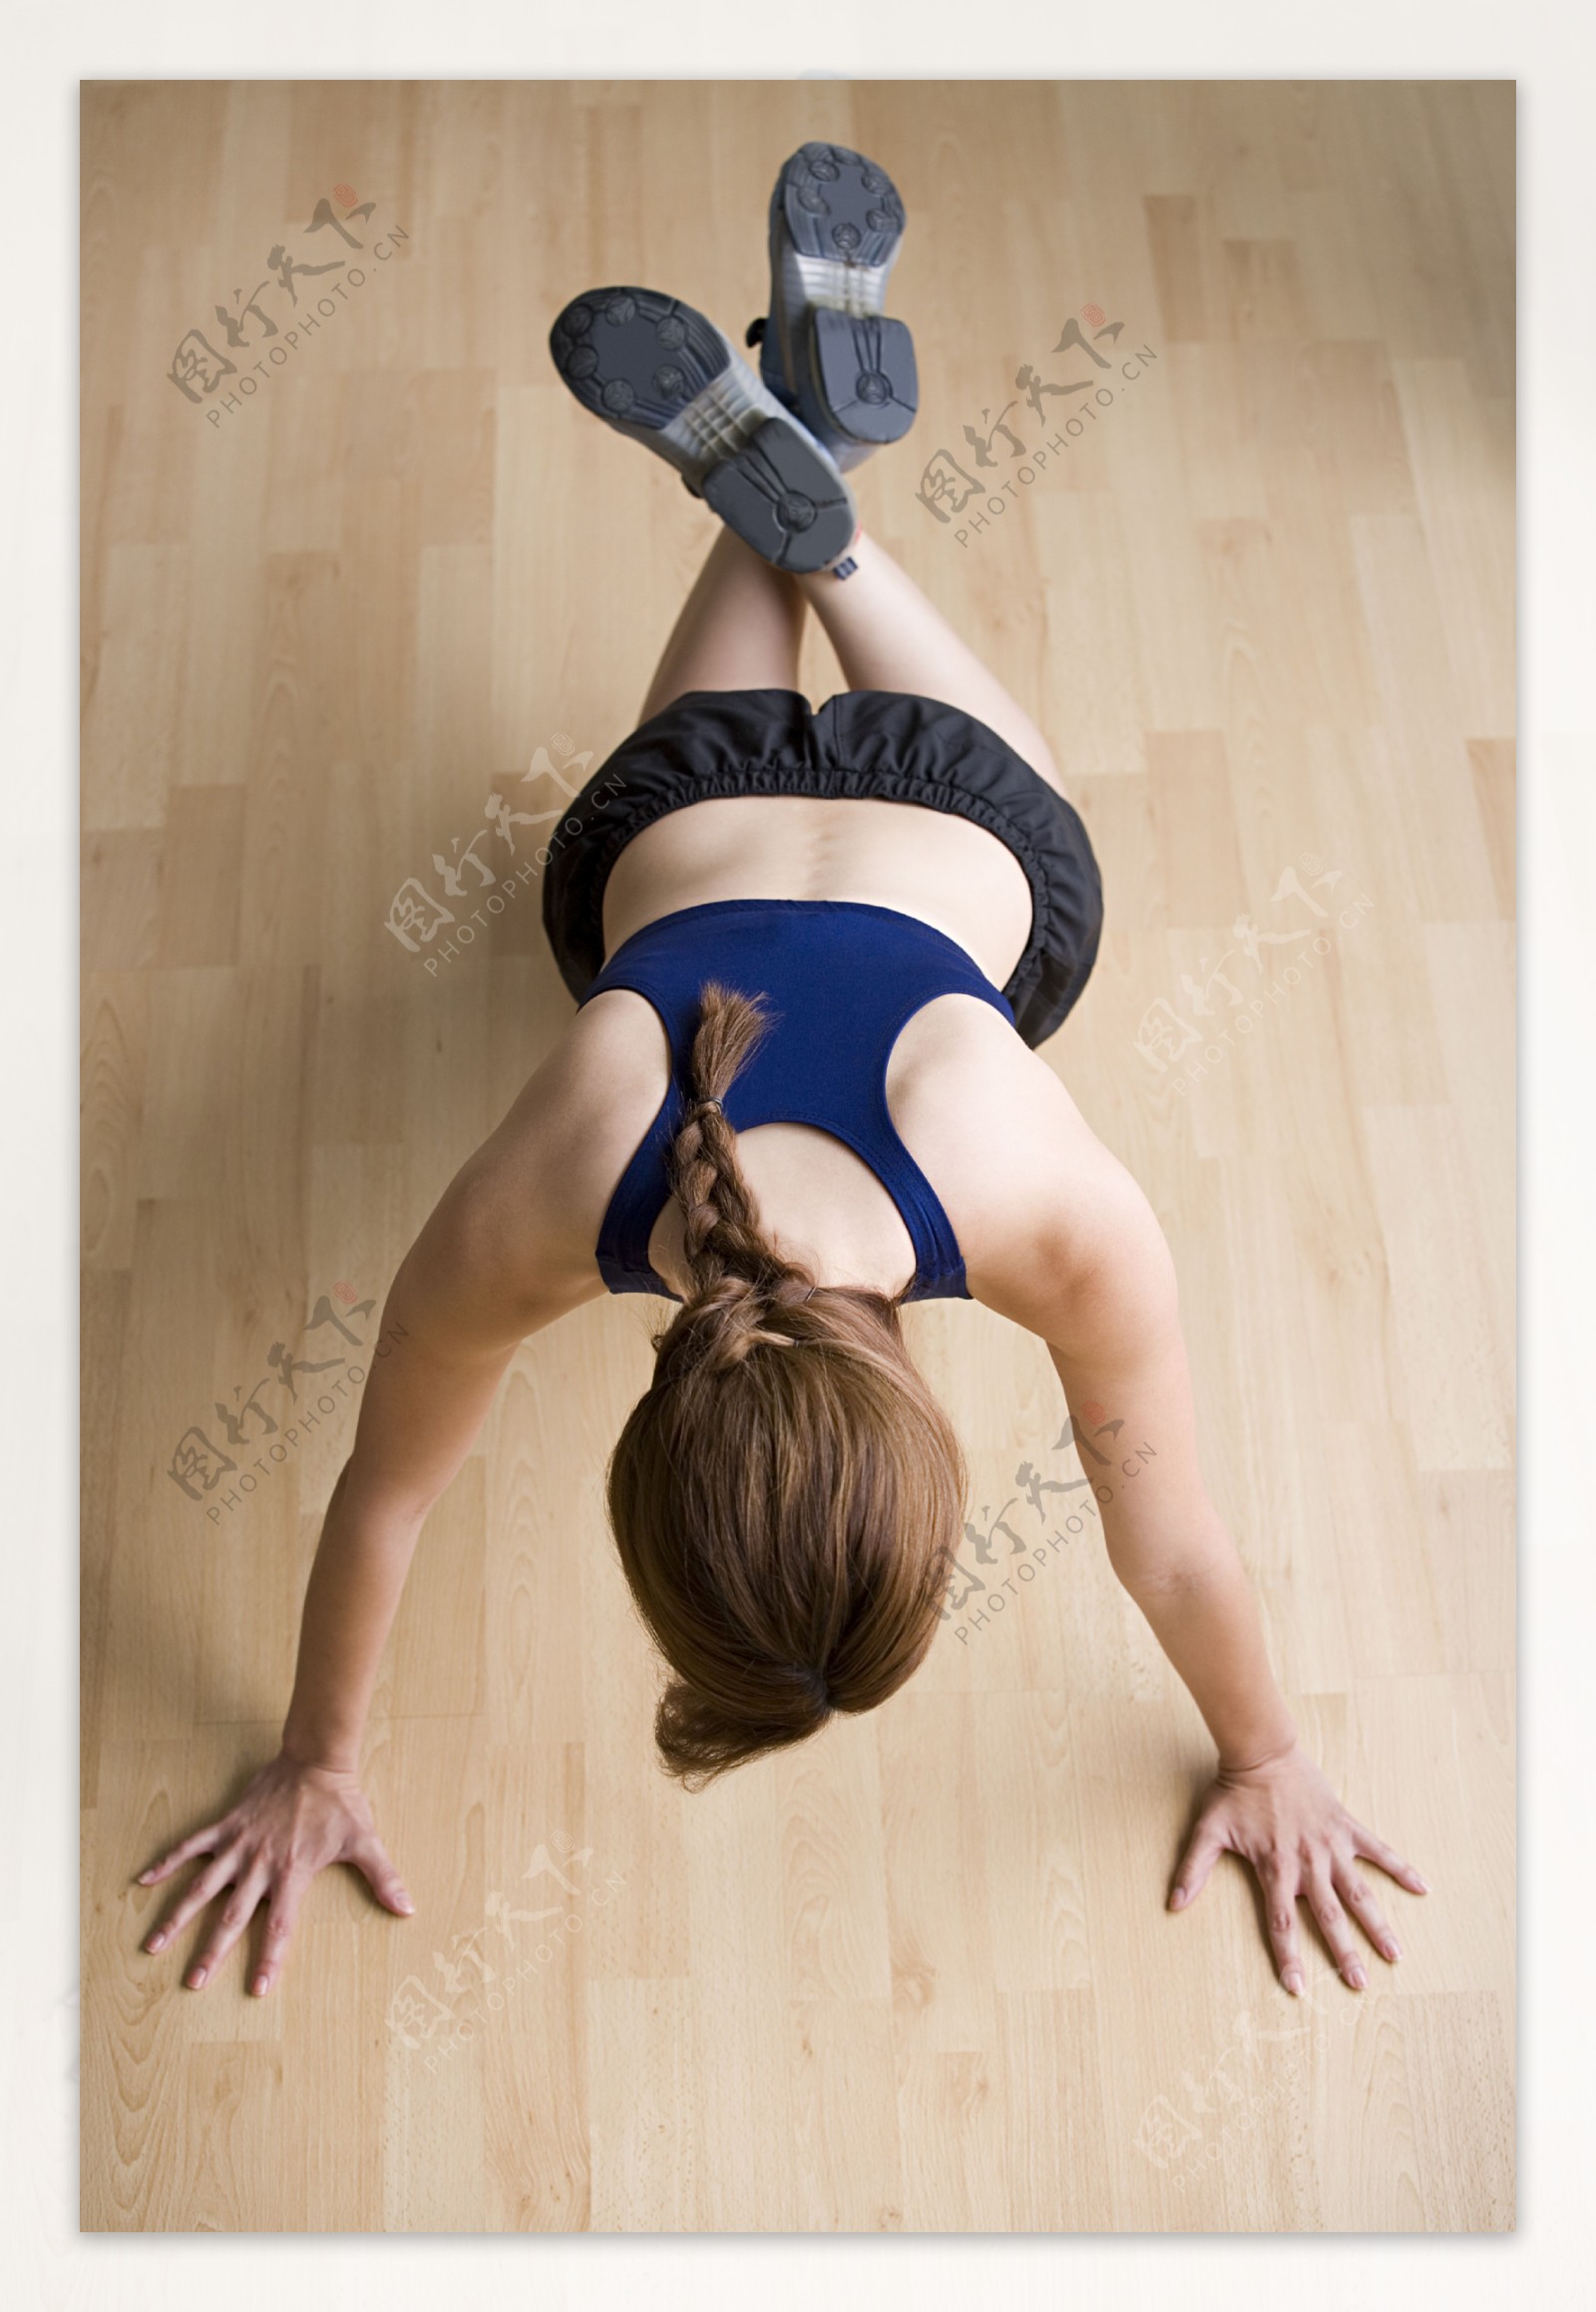 练瑜伽的女性图片